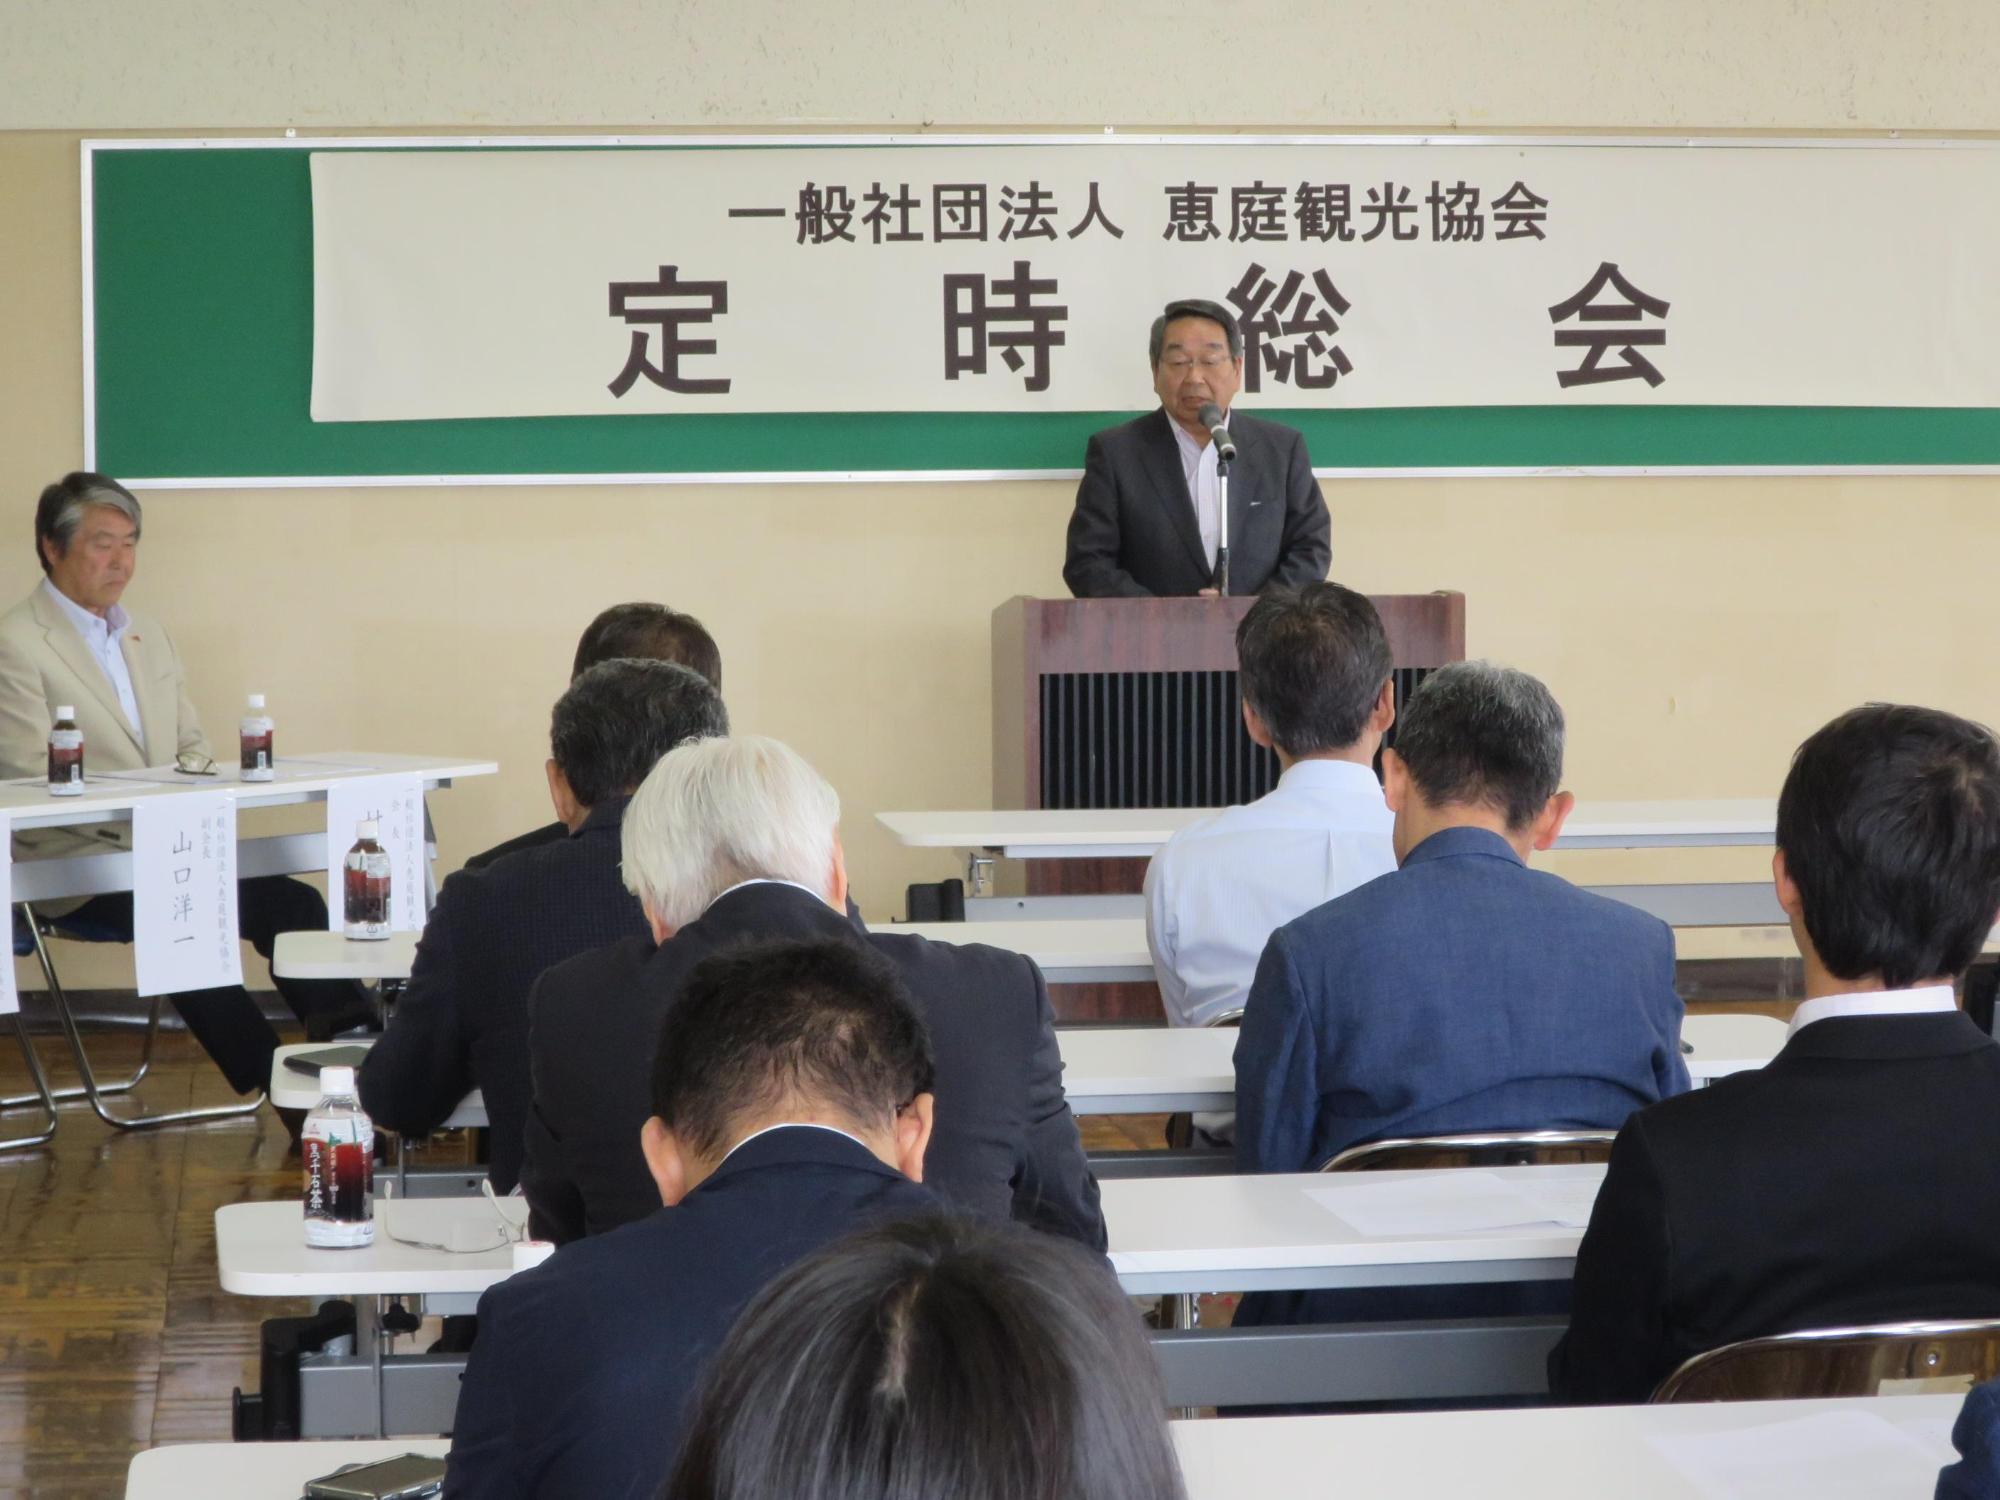 「恵庭観光協会定時総会」にて挨拶をしている原田市長の写真